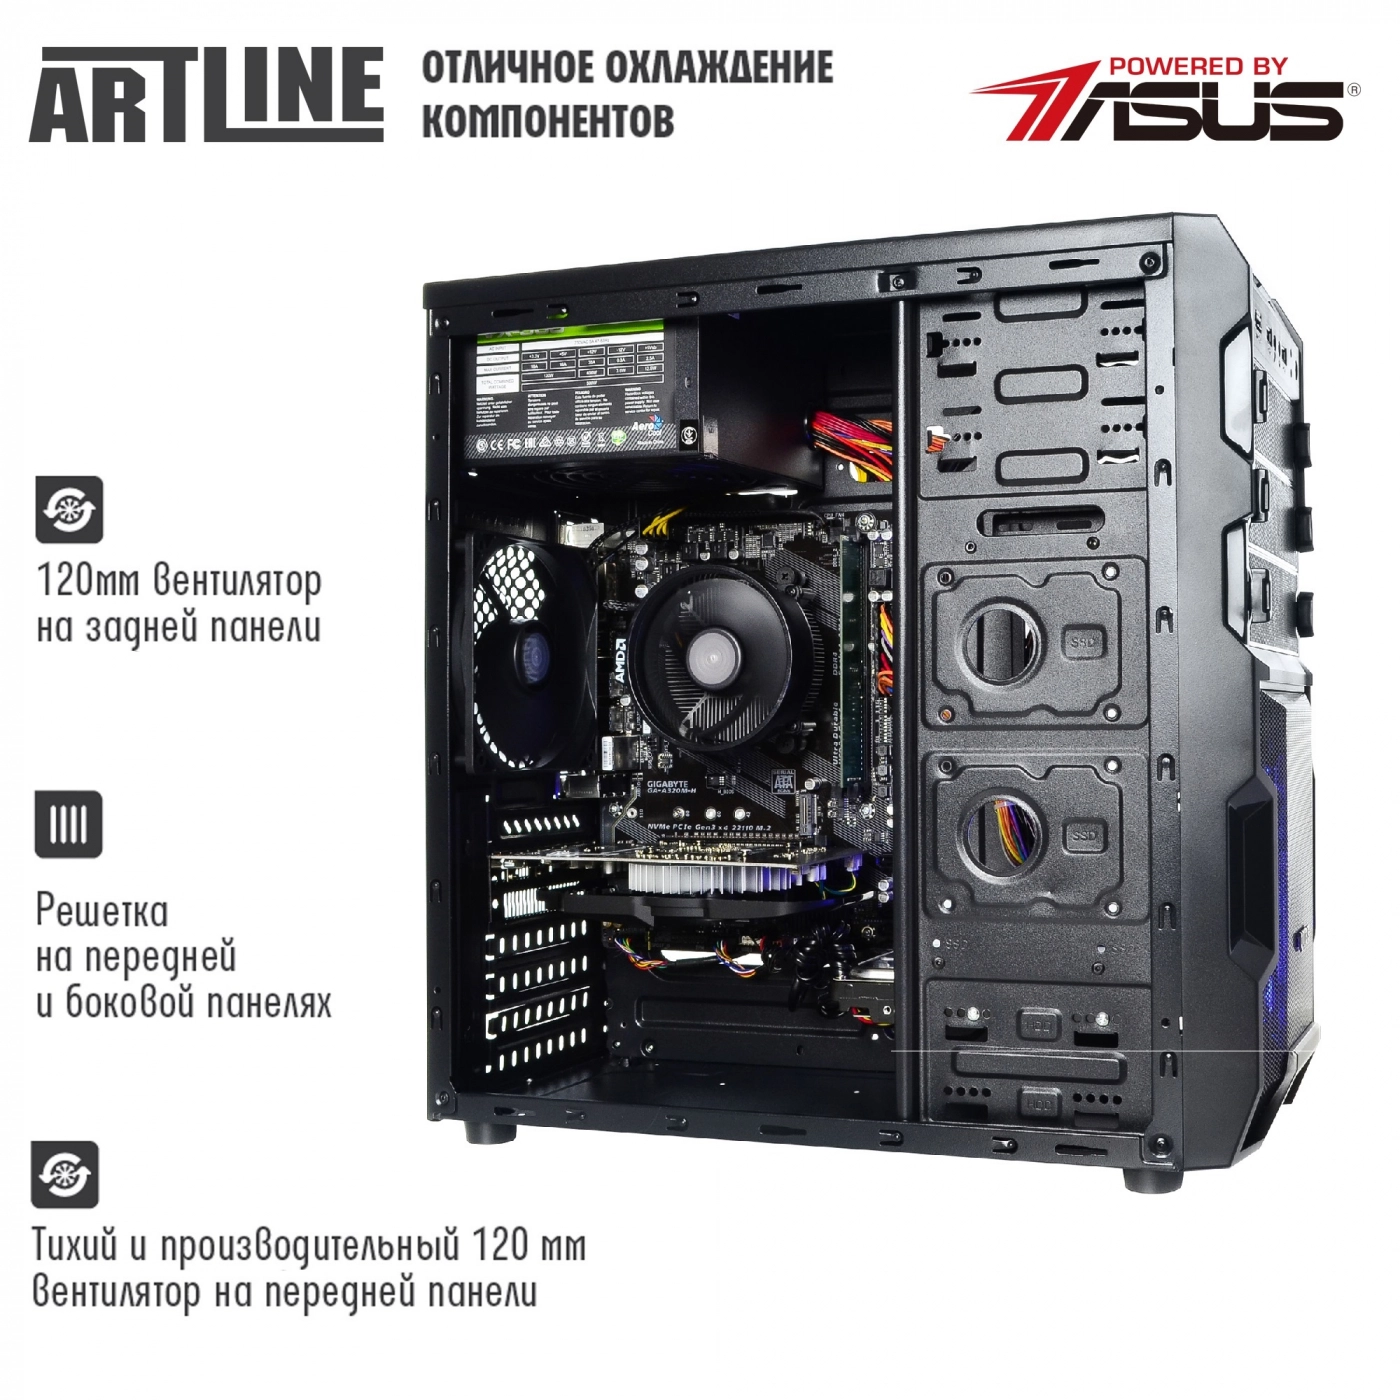 Купить Компьютер ARTLINE Gaming X43v17 - фото 2